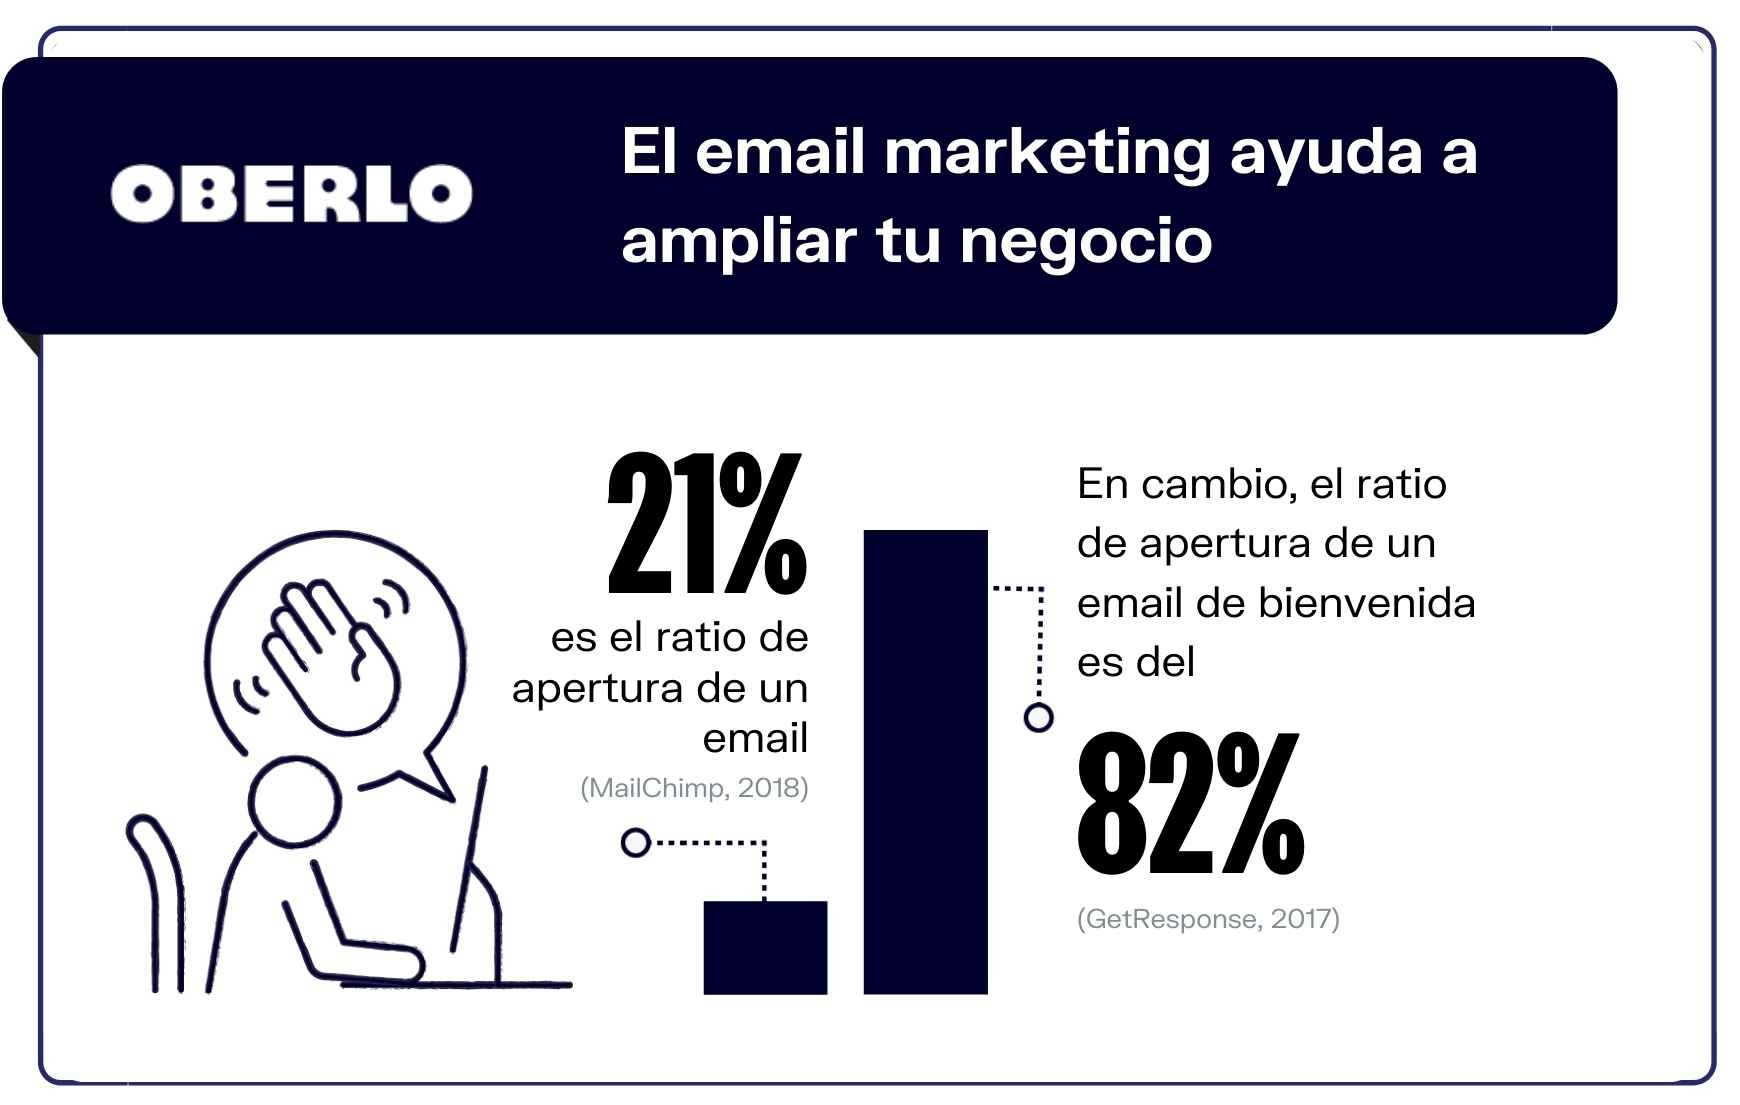 Marketing por email en cifras